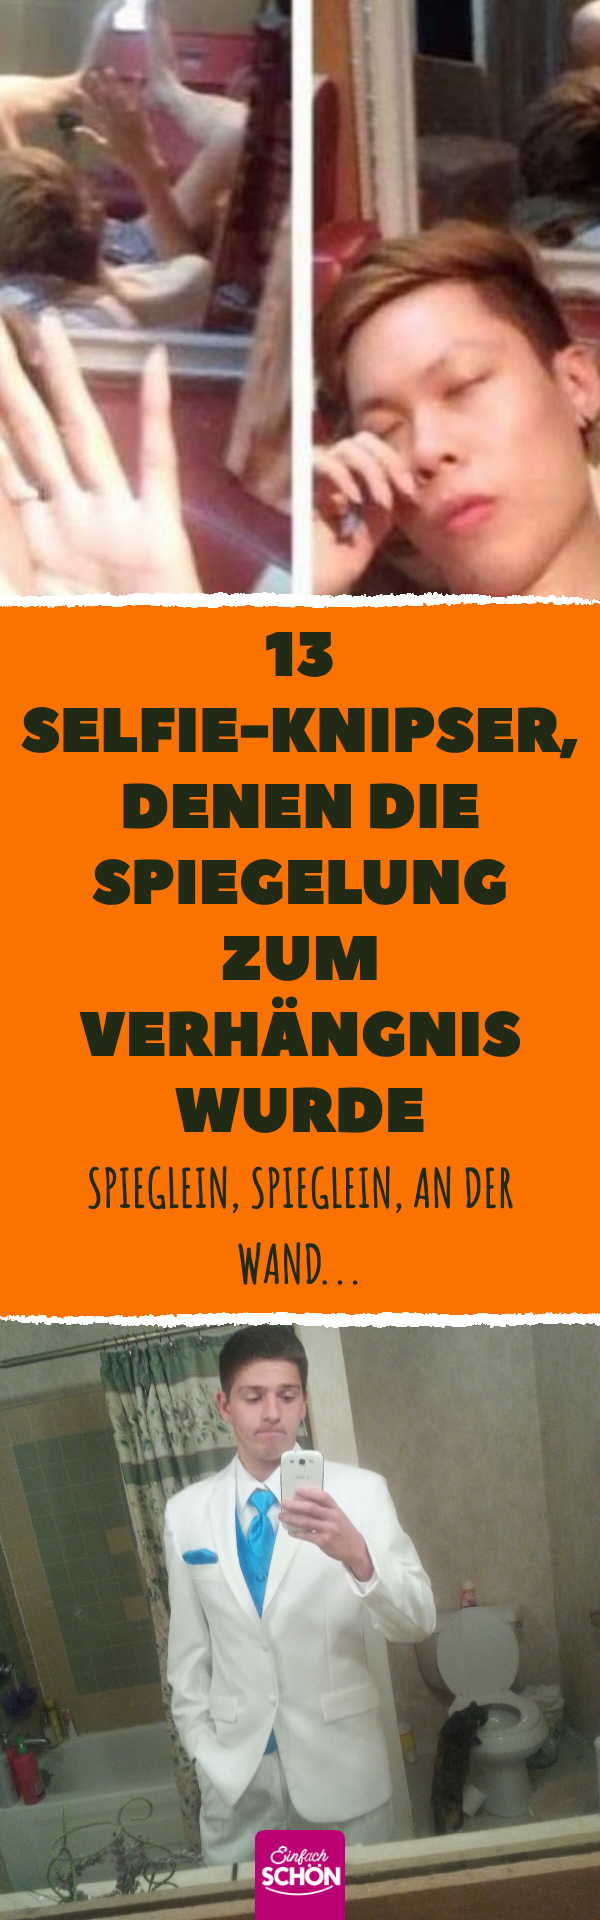 13 Selfie-Knipser, denen die Spiegelung zum Verhängnis wurde